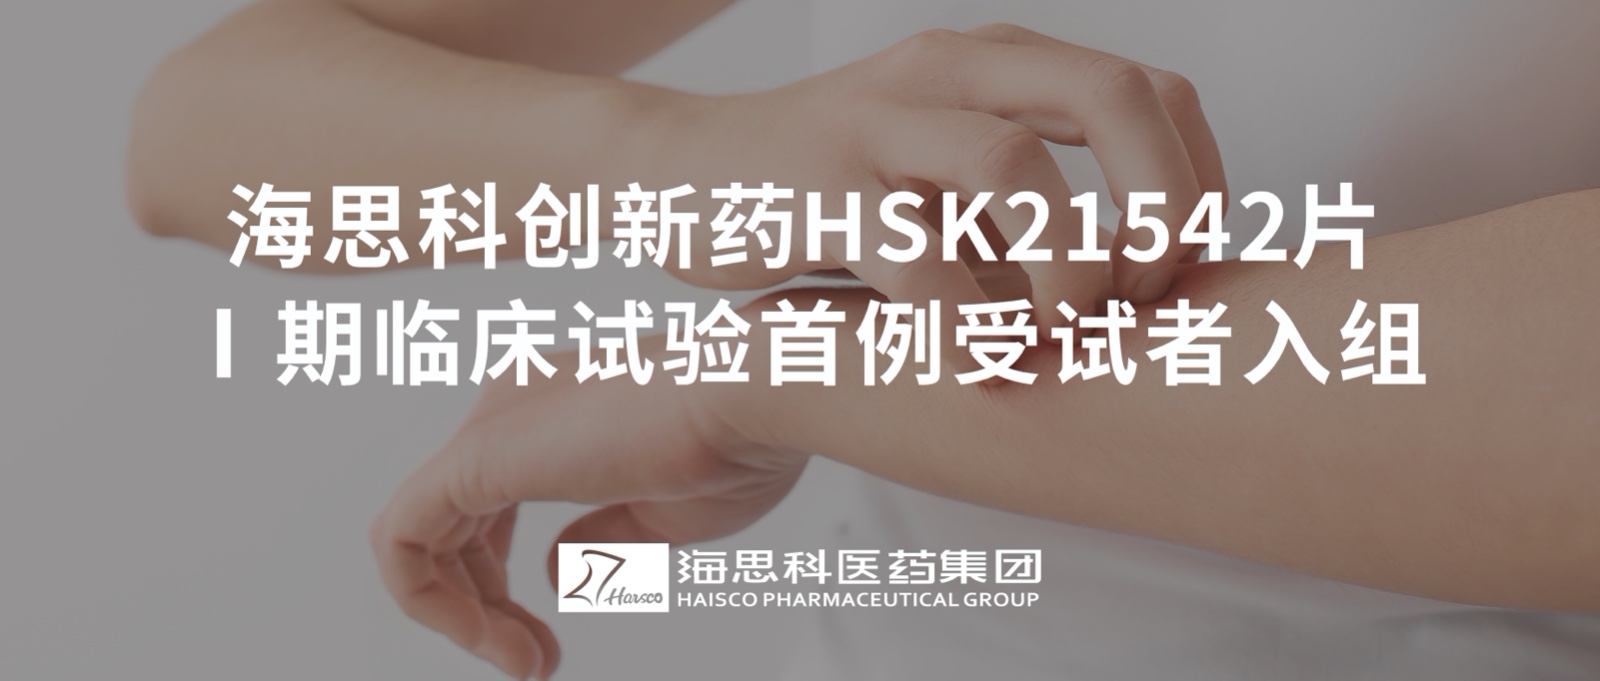 8455新葡萄娱乐官网版下载创新药HSK21542片Ⅰ期临床试验首例受试者入组